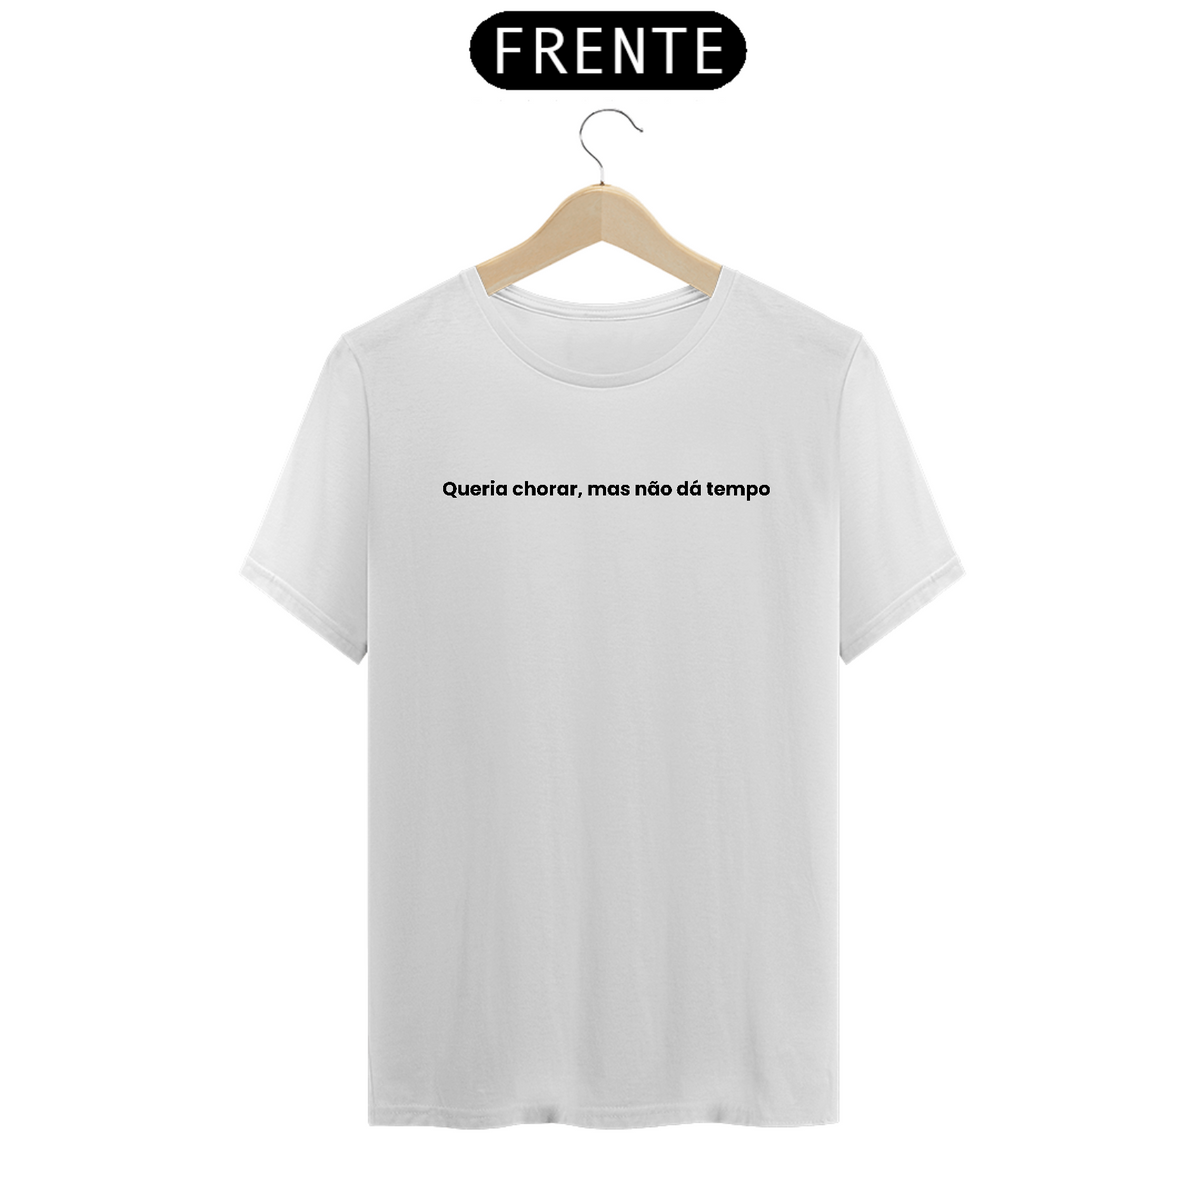 Nome do produto: Camiseta - Queria chorar, mas não dá tempo - branca